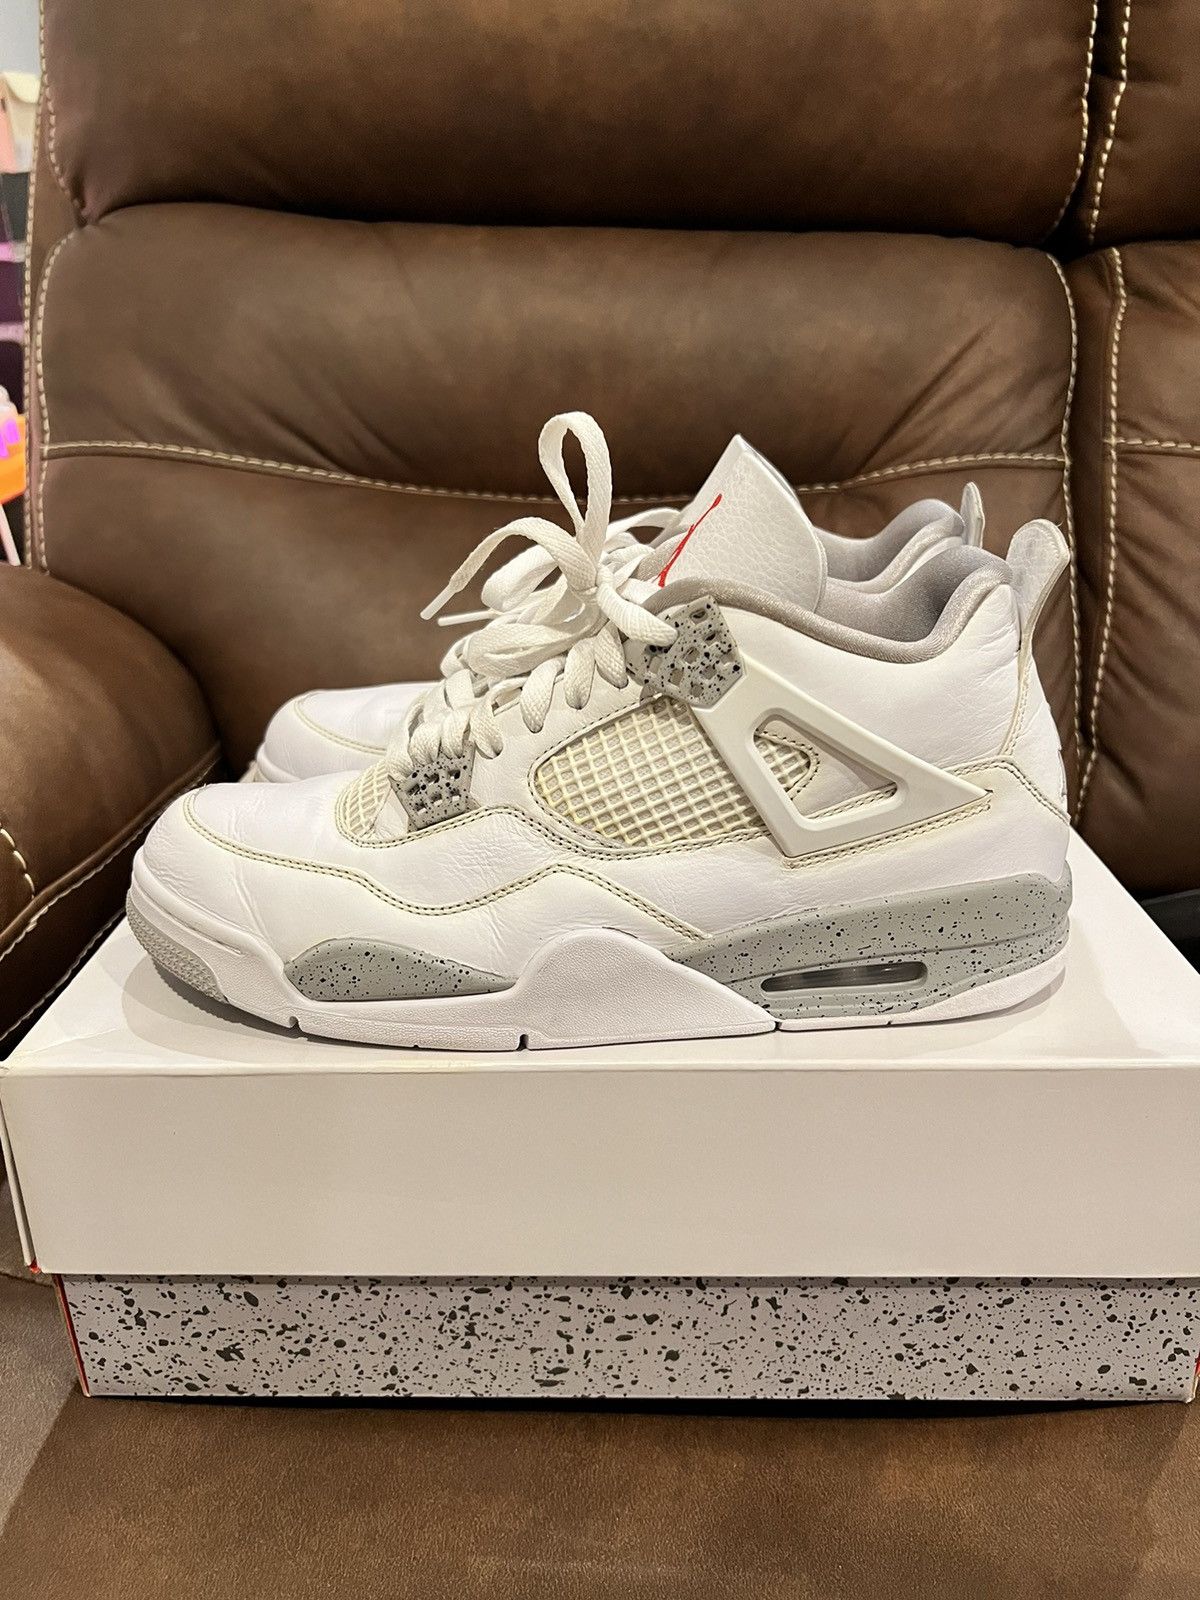 Pre-owned Jordan Nike Jordan 4 Retro White Oreo (2021) Shoes